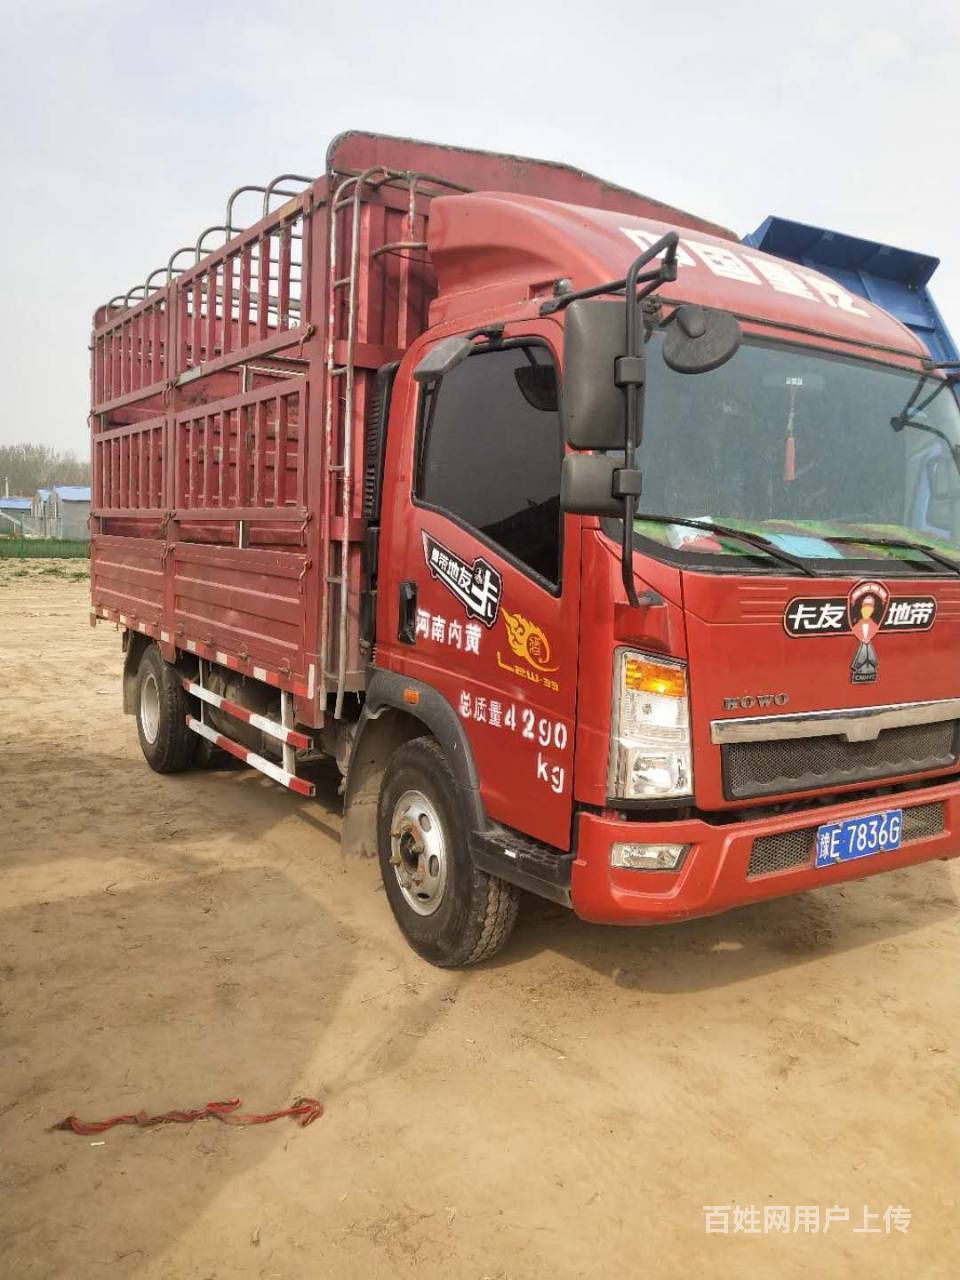 中国重汽箱货4米2图片